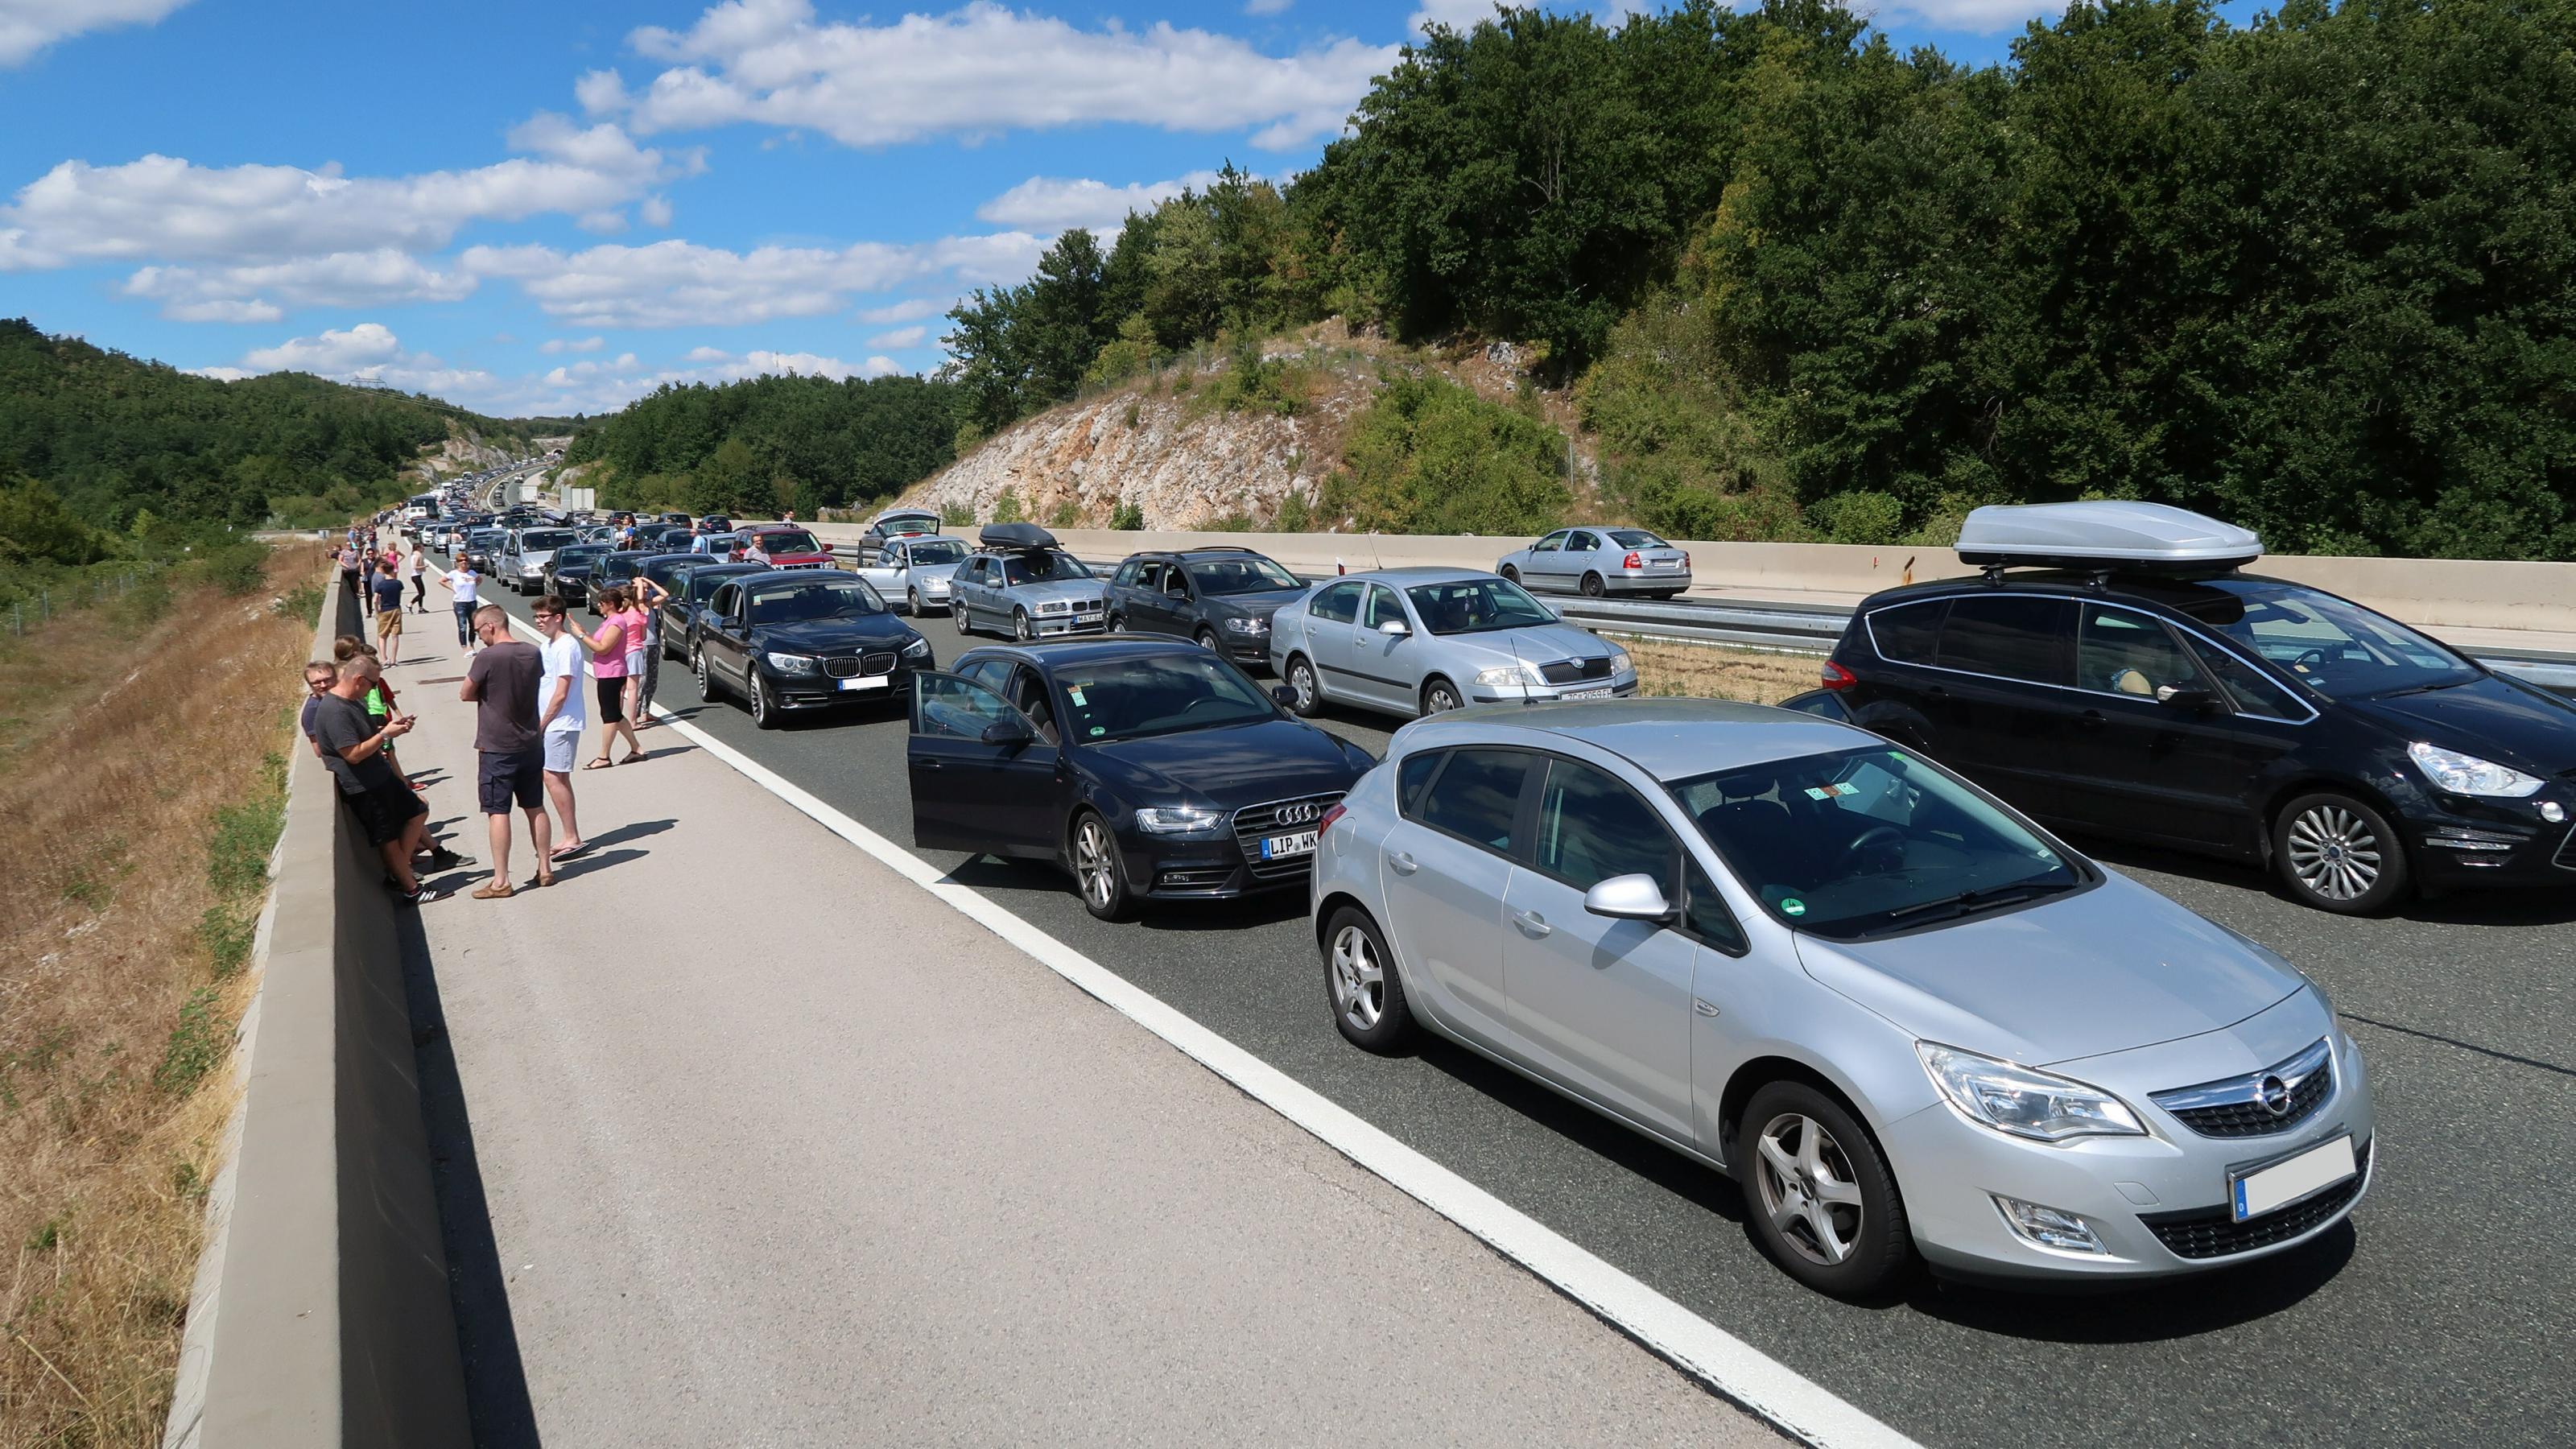 Auf einer Autobahn ist ein langer Stau zu sehen. Mehrere Personen stehen neben ihren Autos und unterhalten sich.